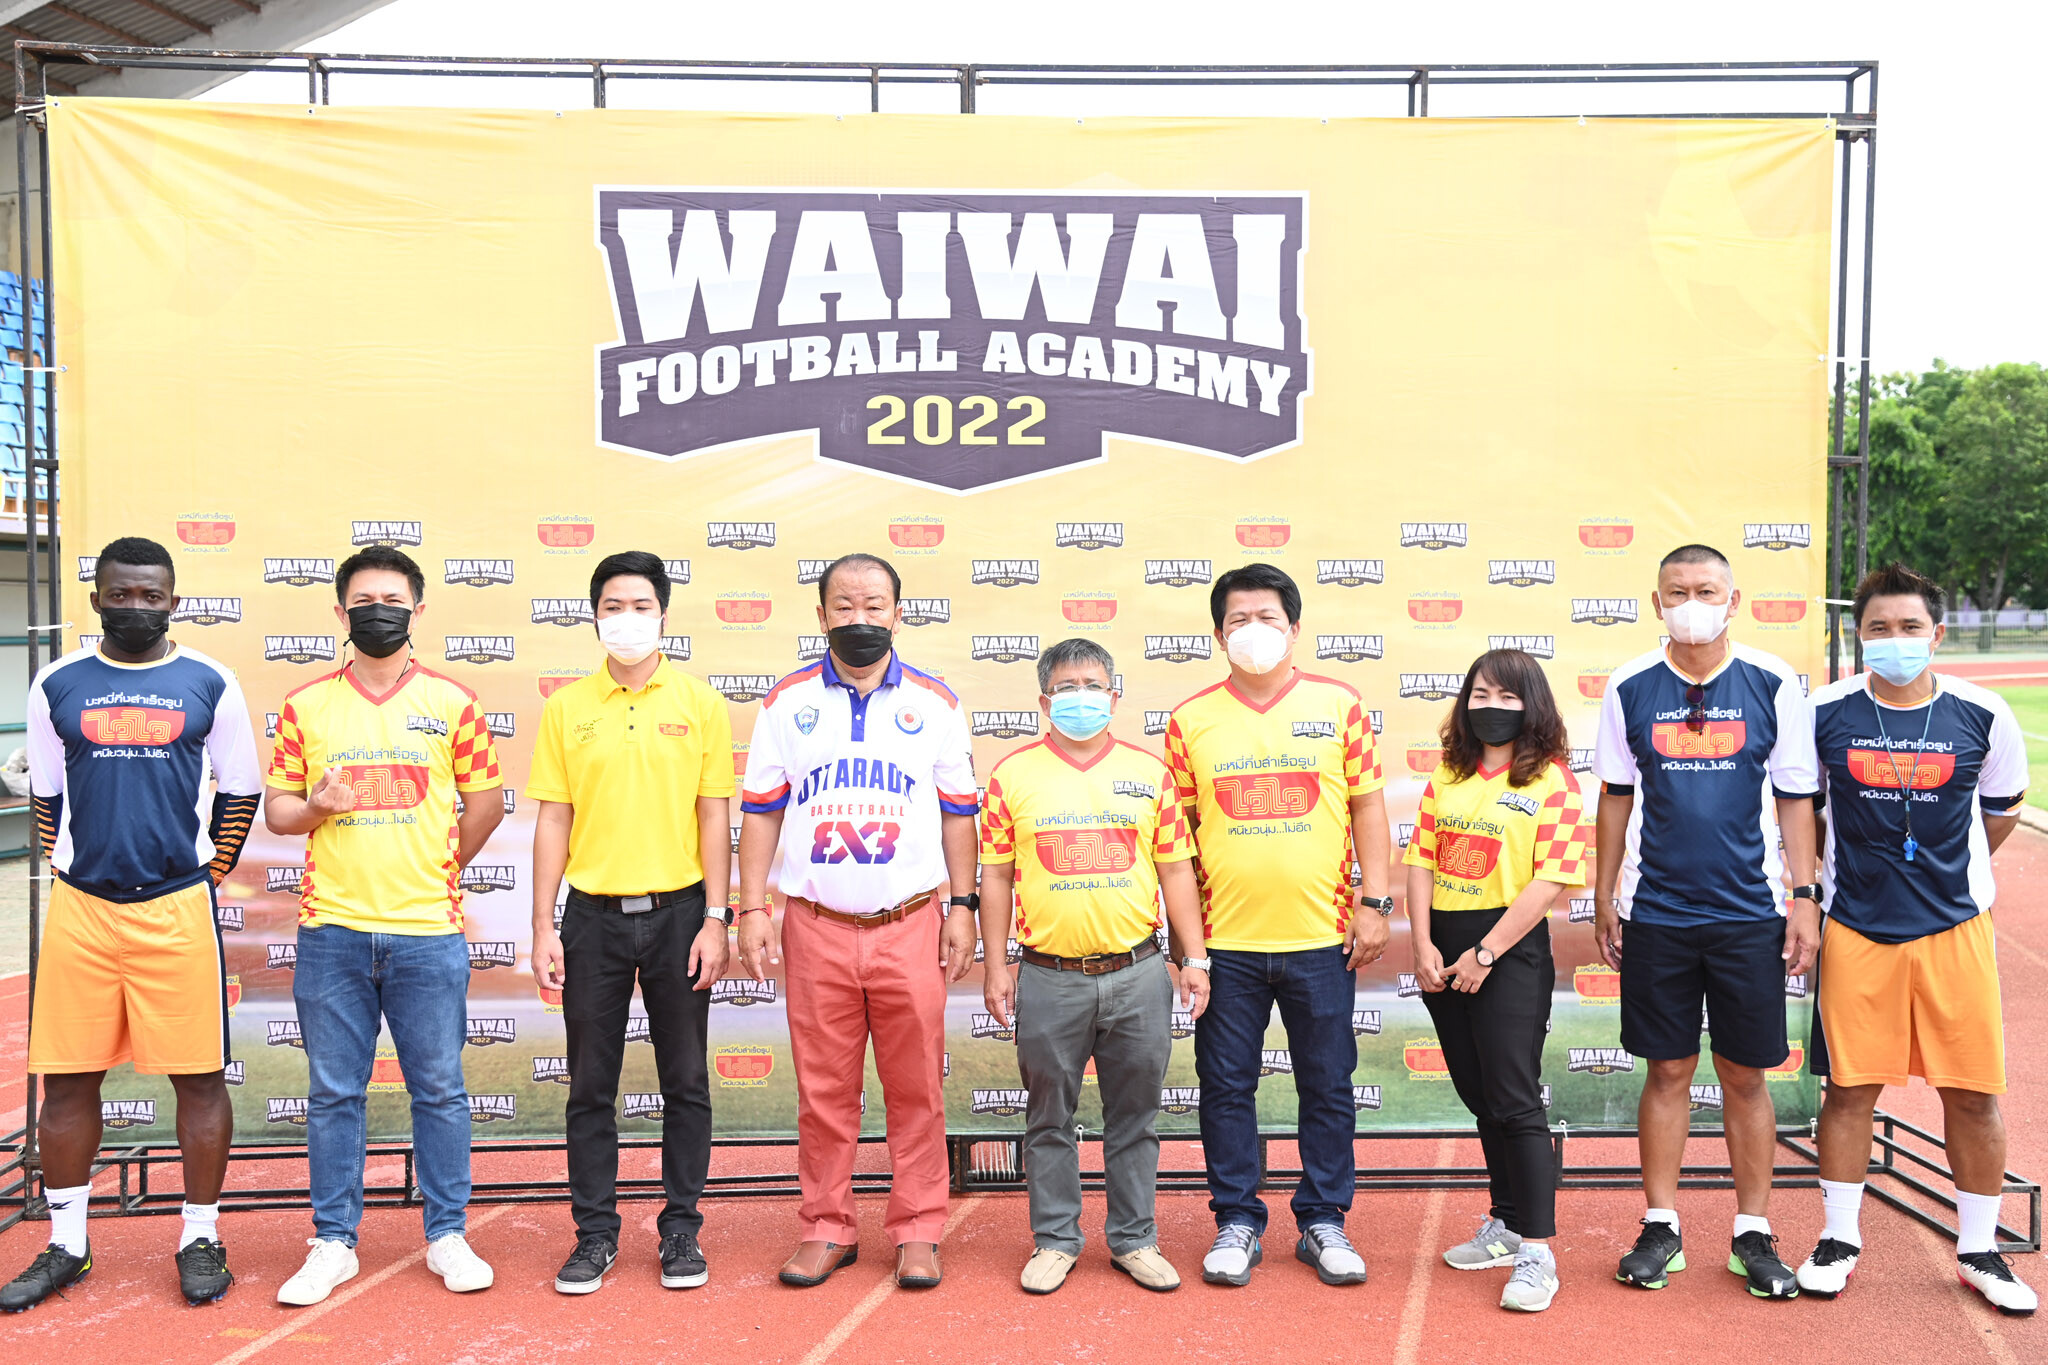 "ไวไว" เดินหน้าเปิด "WAIWAI FOOTBALL ACADEMY 2022 สนามที่ 2 จ.อุตรดิตถ์" เรียนฟุตบอลฟรี ภายใต้แคมเปญ "ทำวันนี้...ทำไวไว"